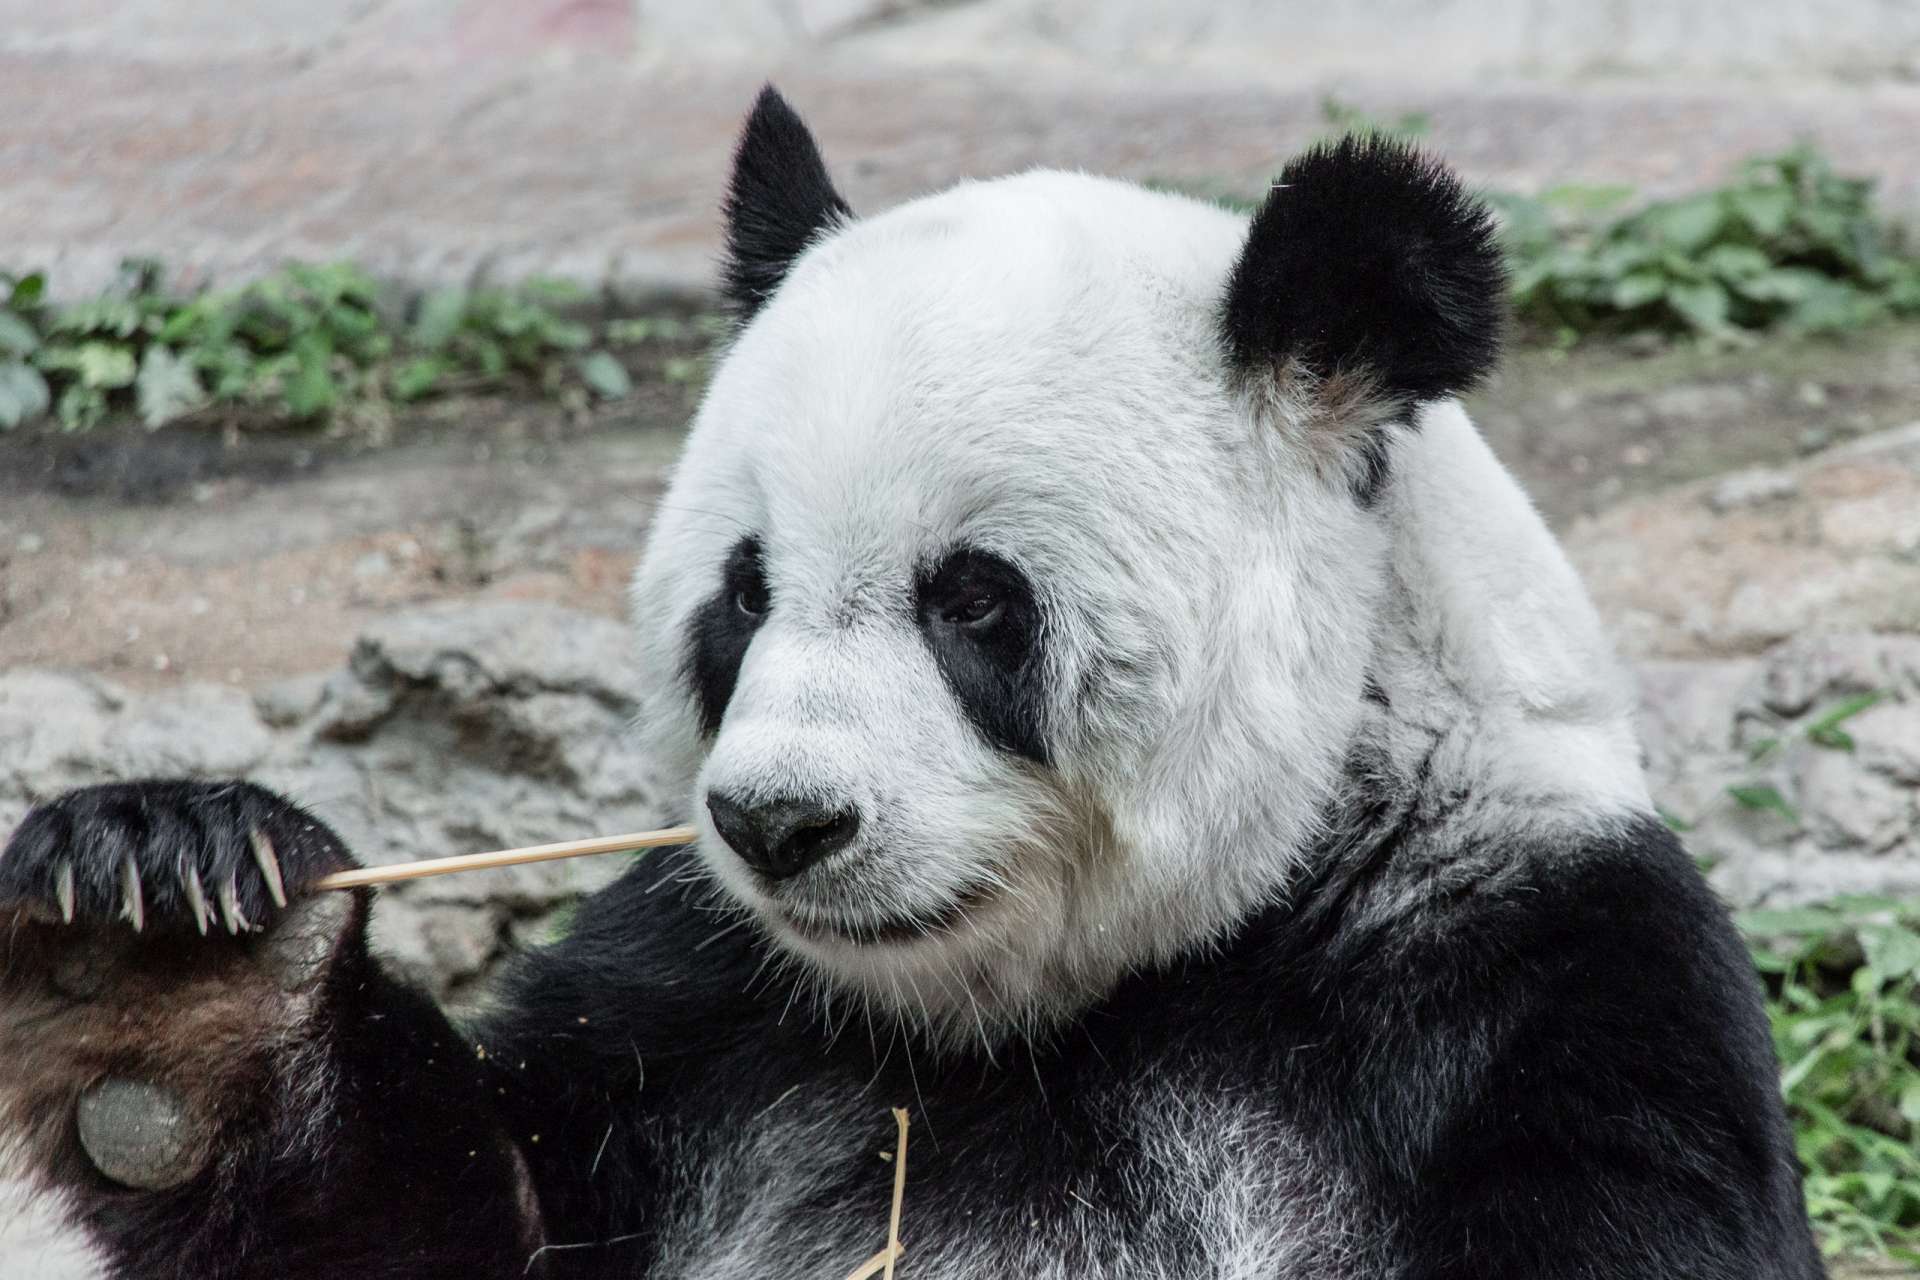 Thailand Chiang Mai zoo panda